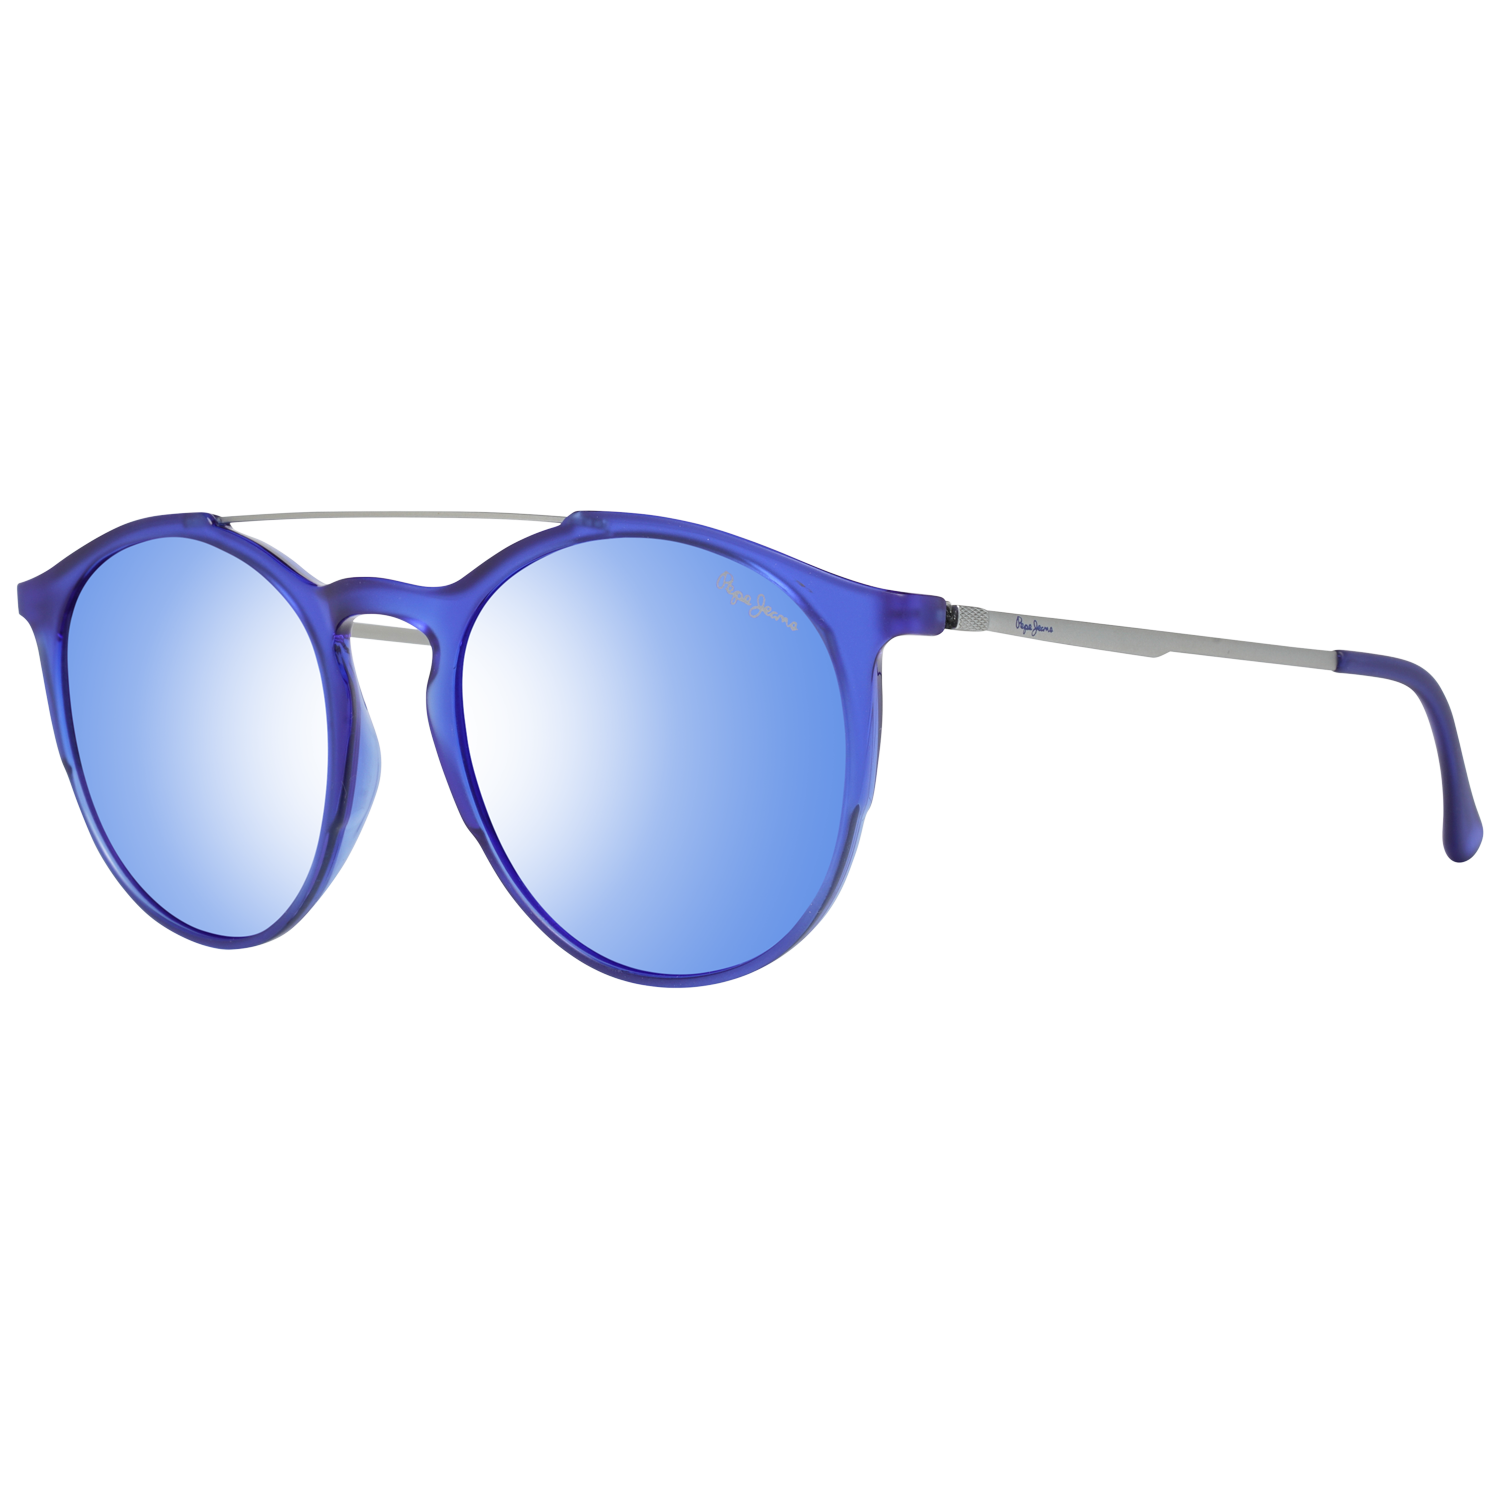 Pepe Jeans Sunglasses Pepe Jeans Sunglasses PJ7322 C4 53 Ansley Eyeglasses Eyewear UK USA Australia 